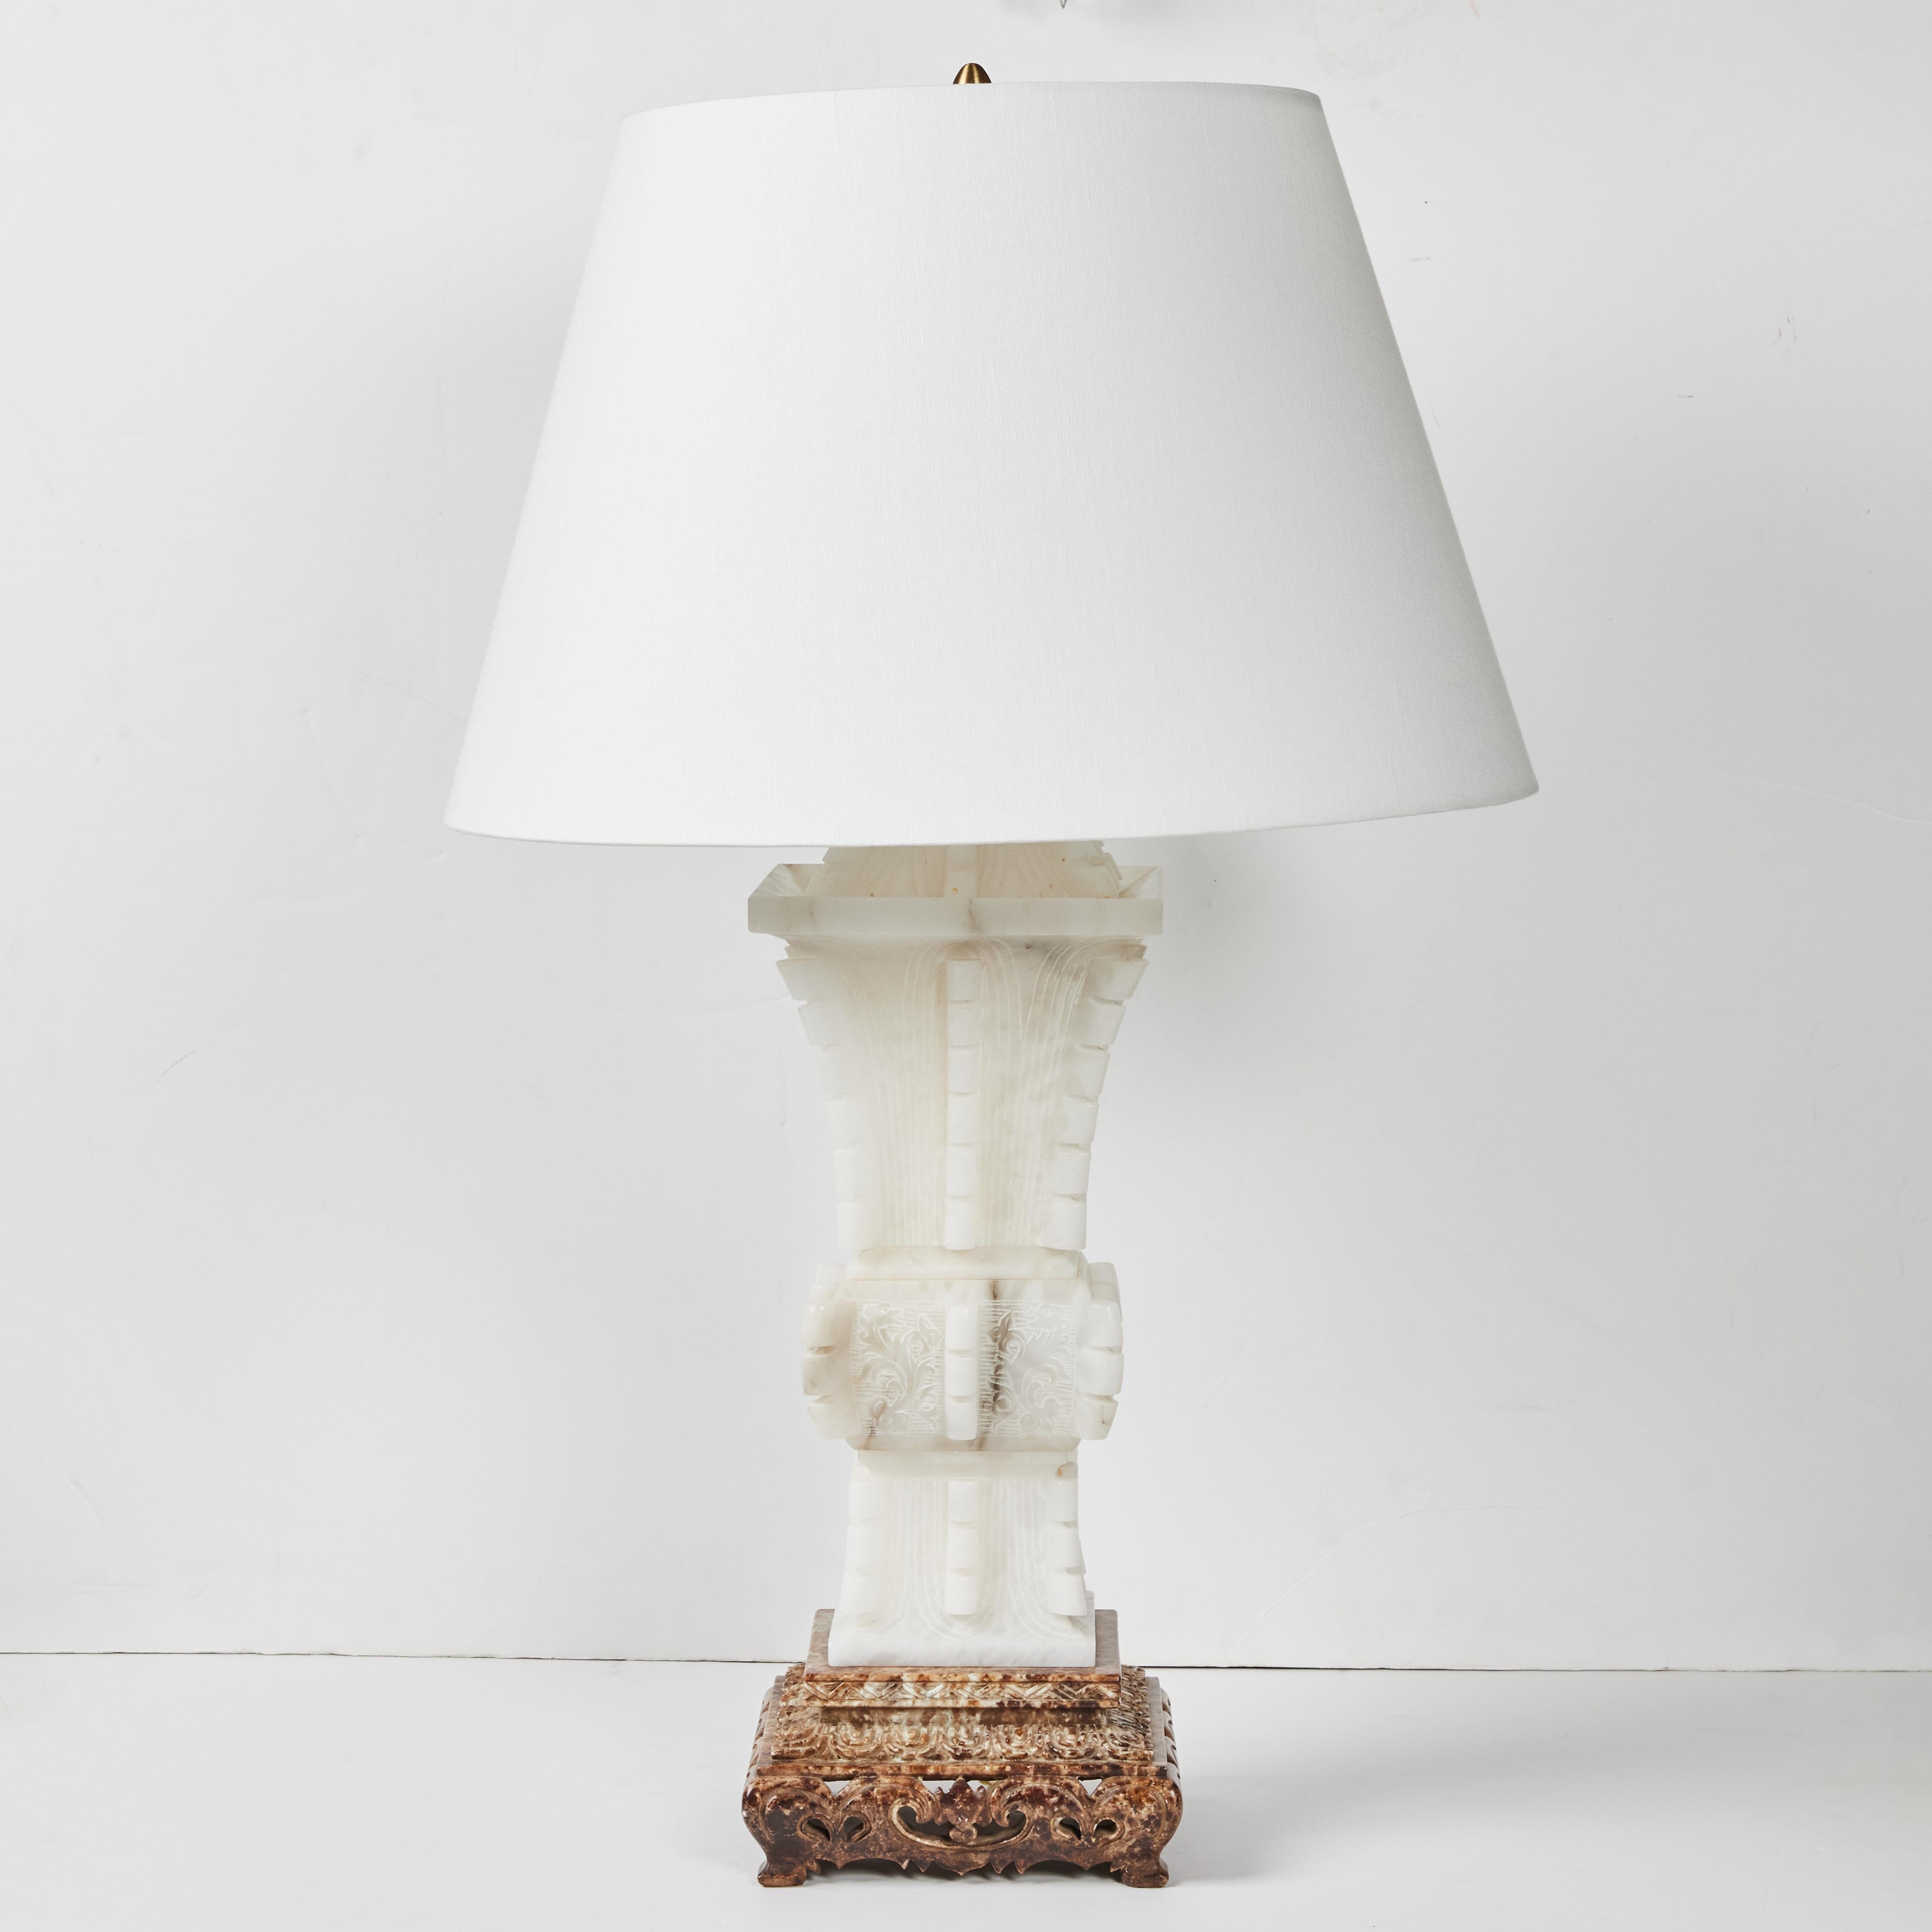 Lampe en albâtre massif, sculptée à la main en Italie, dans le style Chinoiserie par Marbro Company.  Les lampes sont vendues séparément et sont légèrement différentes des hauteurs indiquées ci-dessous.  L'albâtre mesure 22